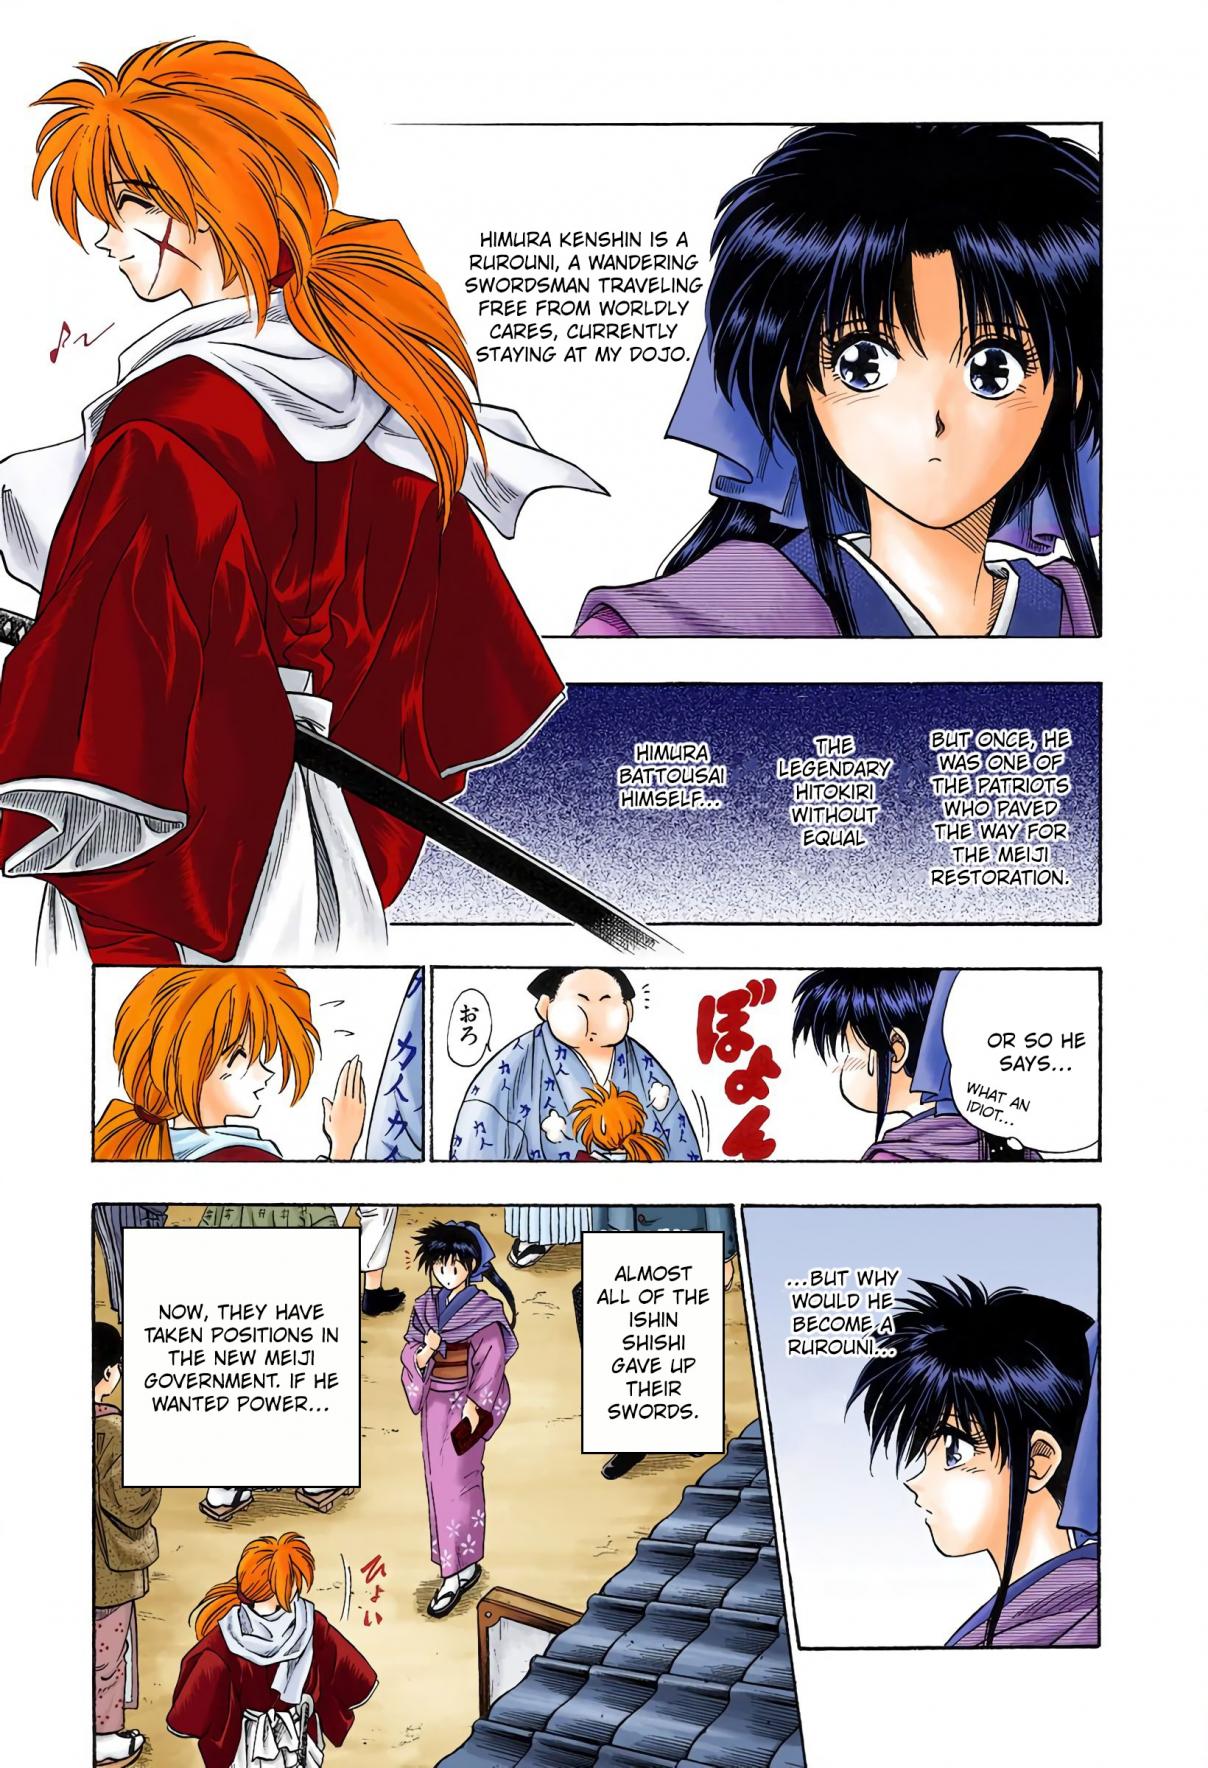 Rurouni Kenshin Digital Colored Comics Vol. 1 Ch. 2 Rurouni in the City